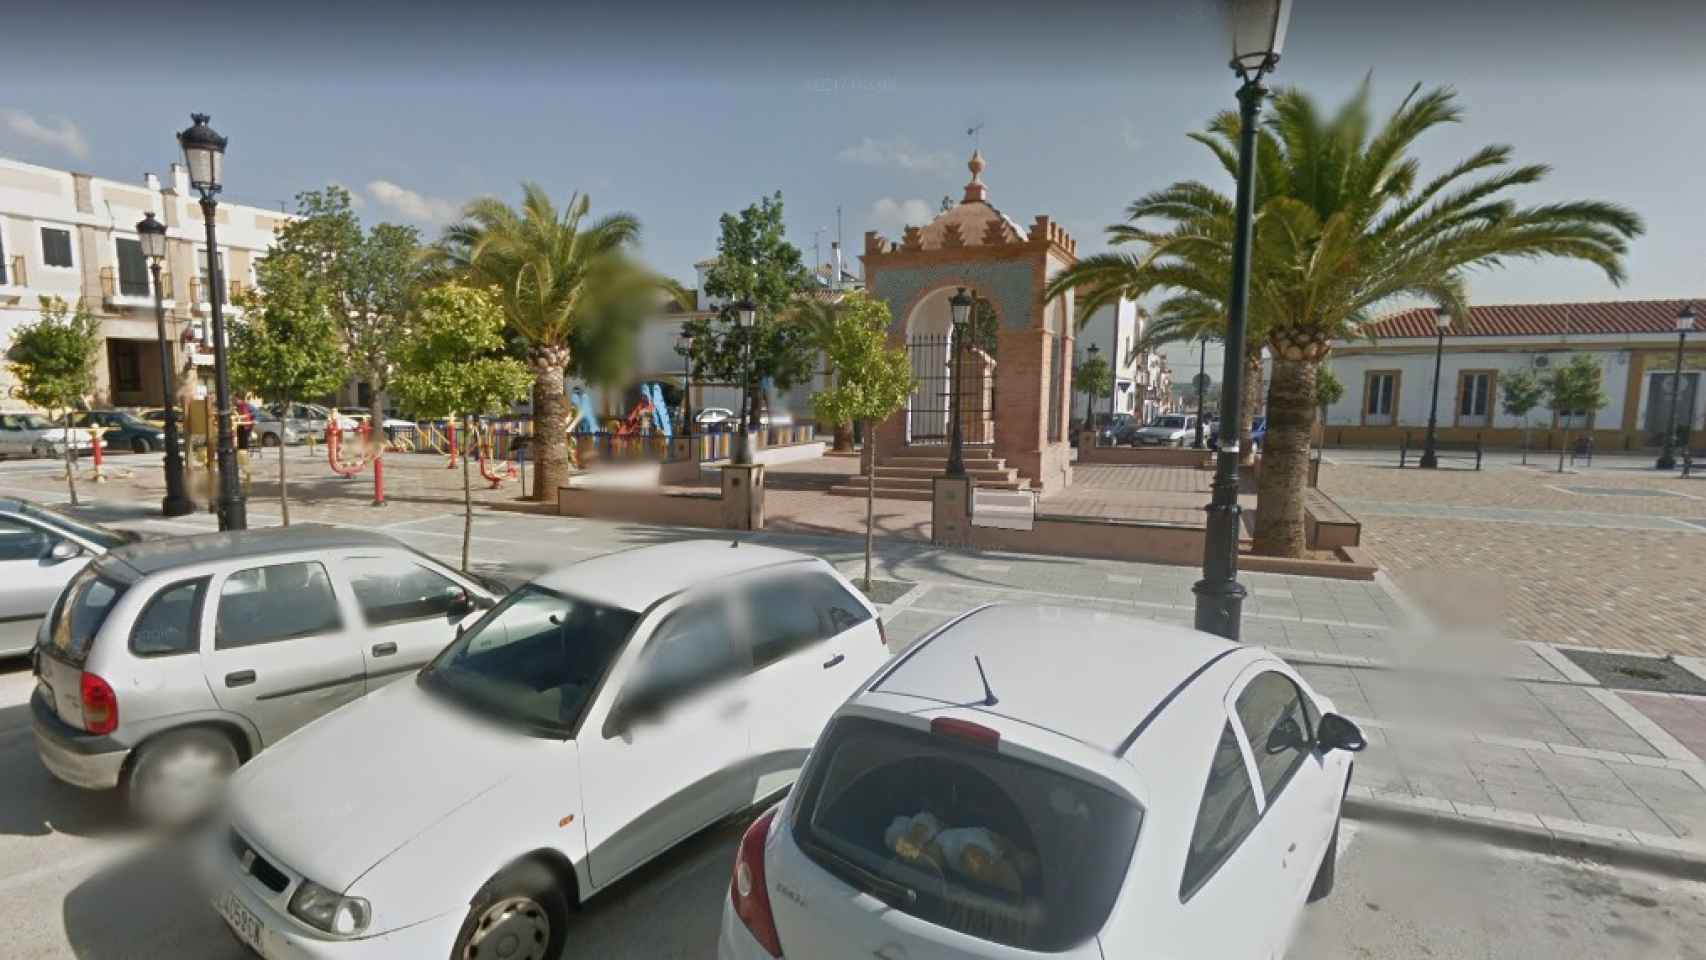 Plaza de España en Pilas (Sevilla), donde se le solía ver al condenado con los críos.